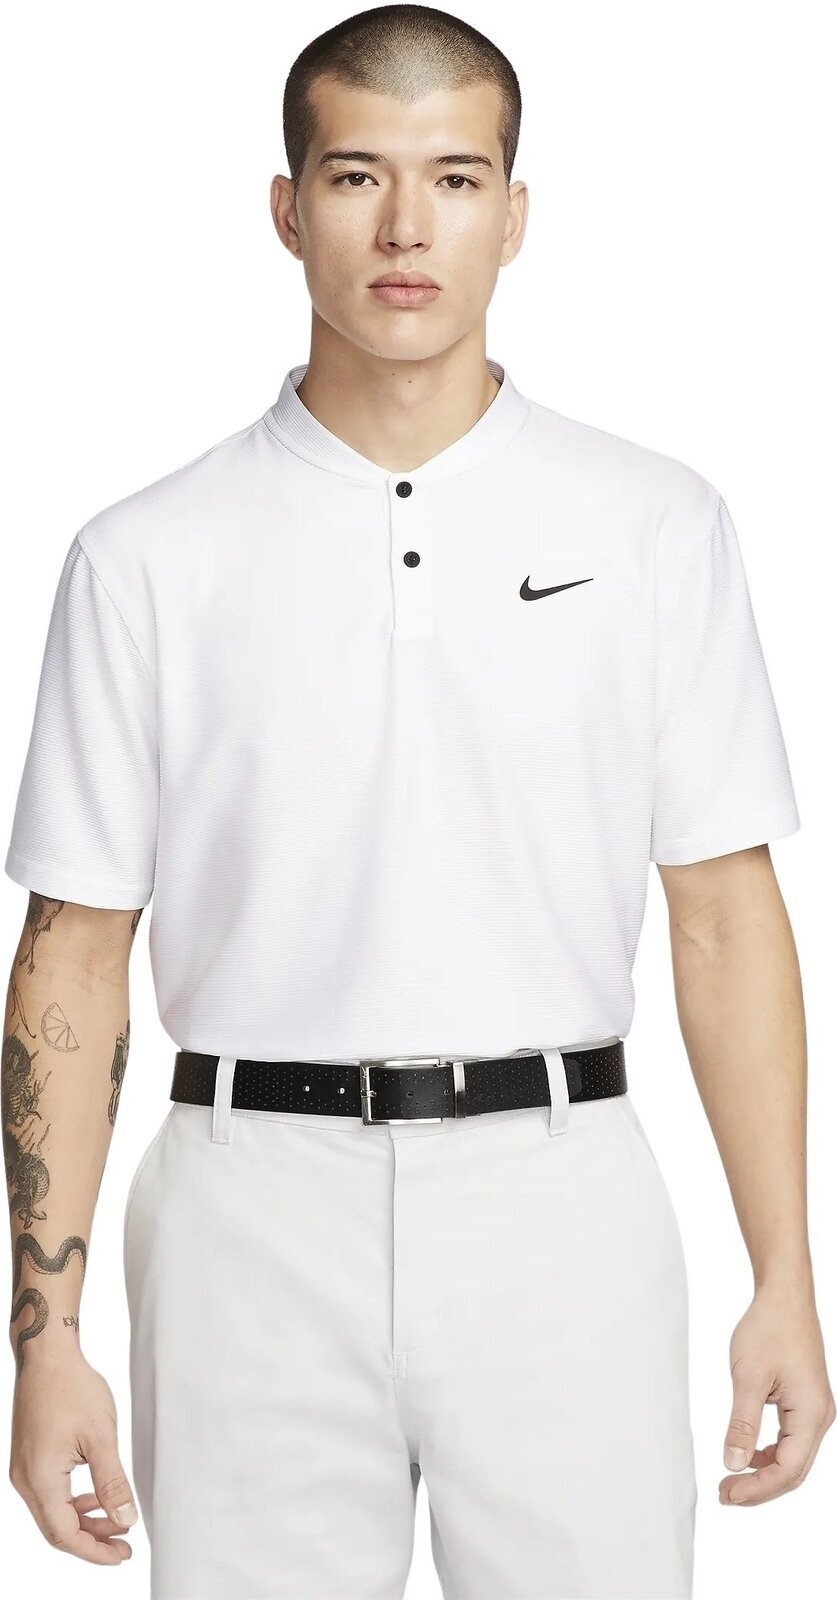 Polo majice Nike Dri-Fit Victory Texture Mens Polo White/Black L